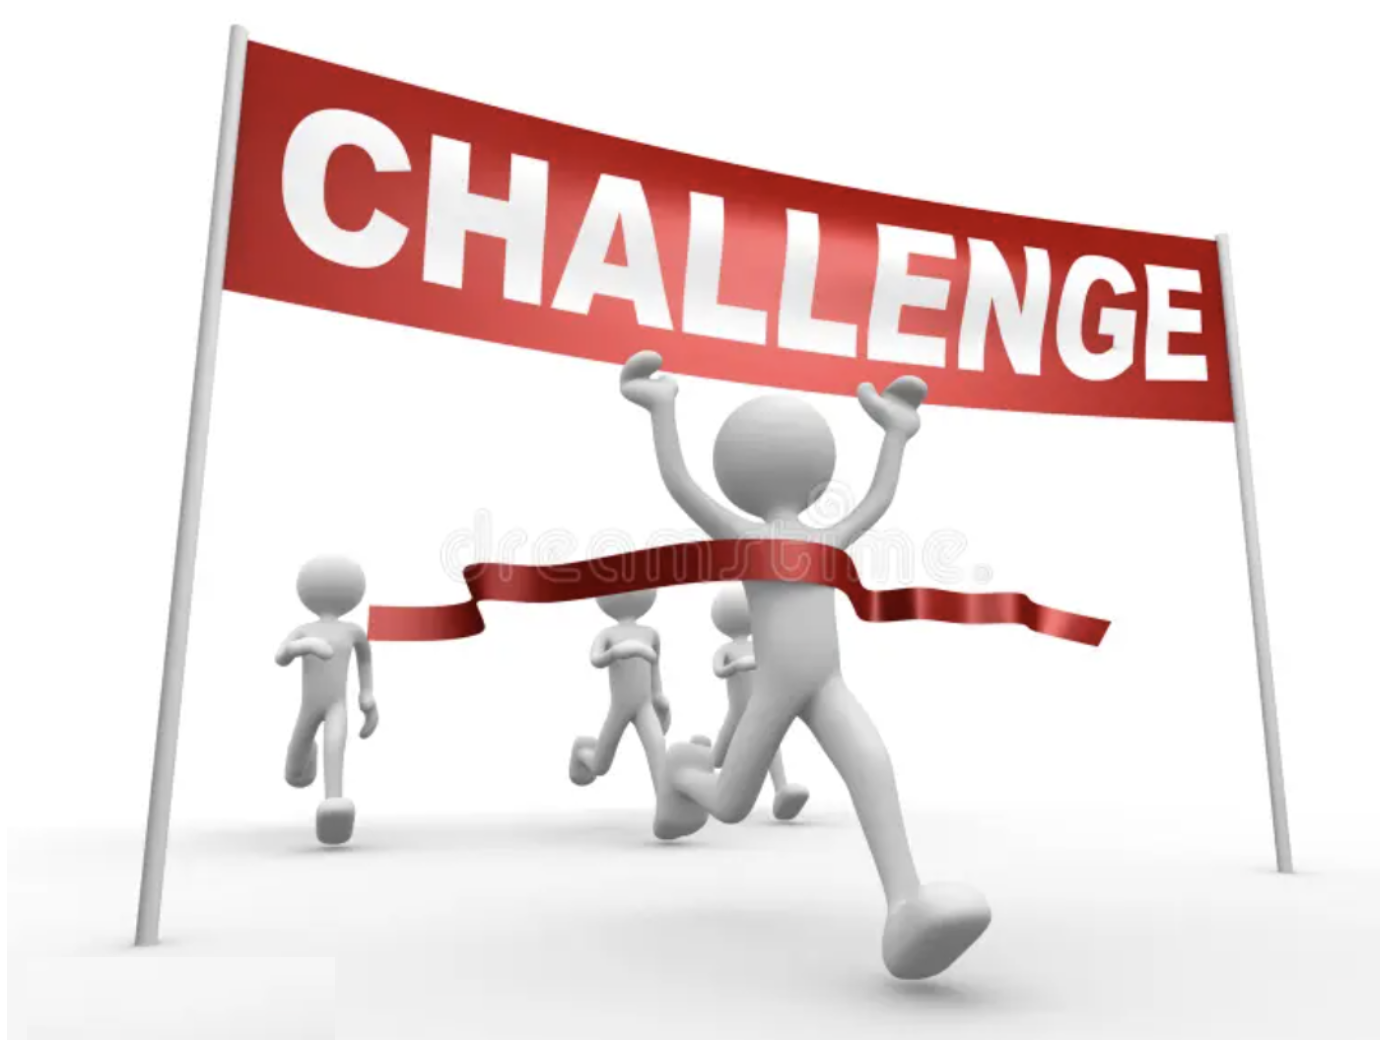 EXCLUSIVITE : Lancement challenges trimestriels ( présentiel et Realbridge )